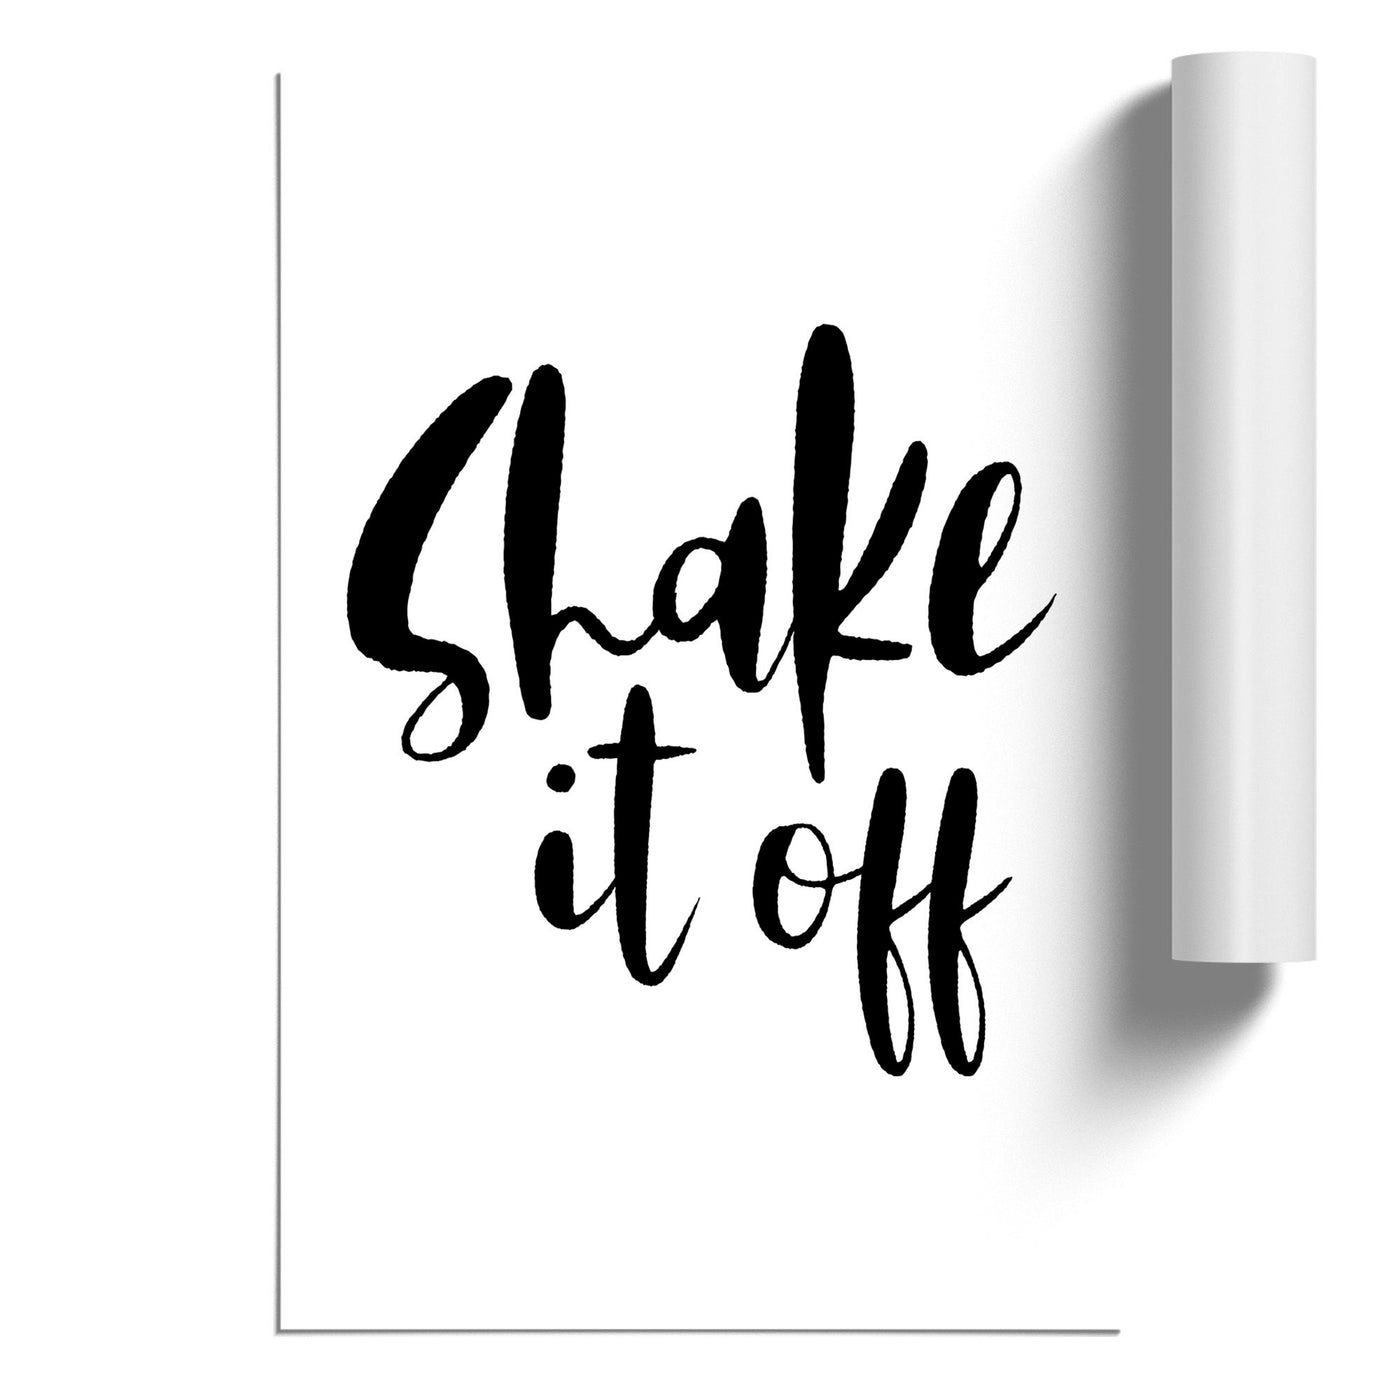 Shake it Off